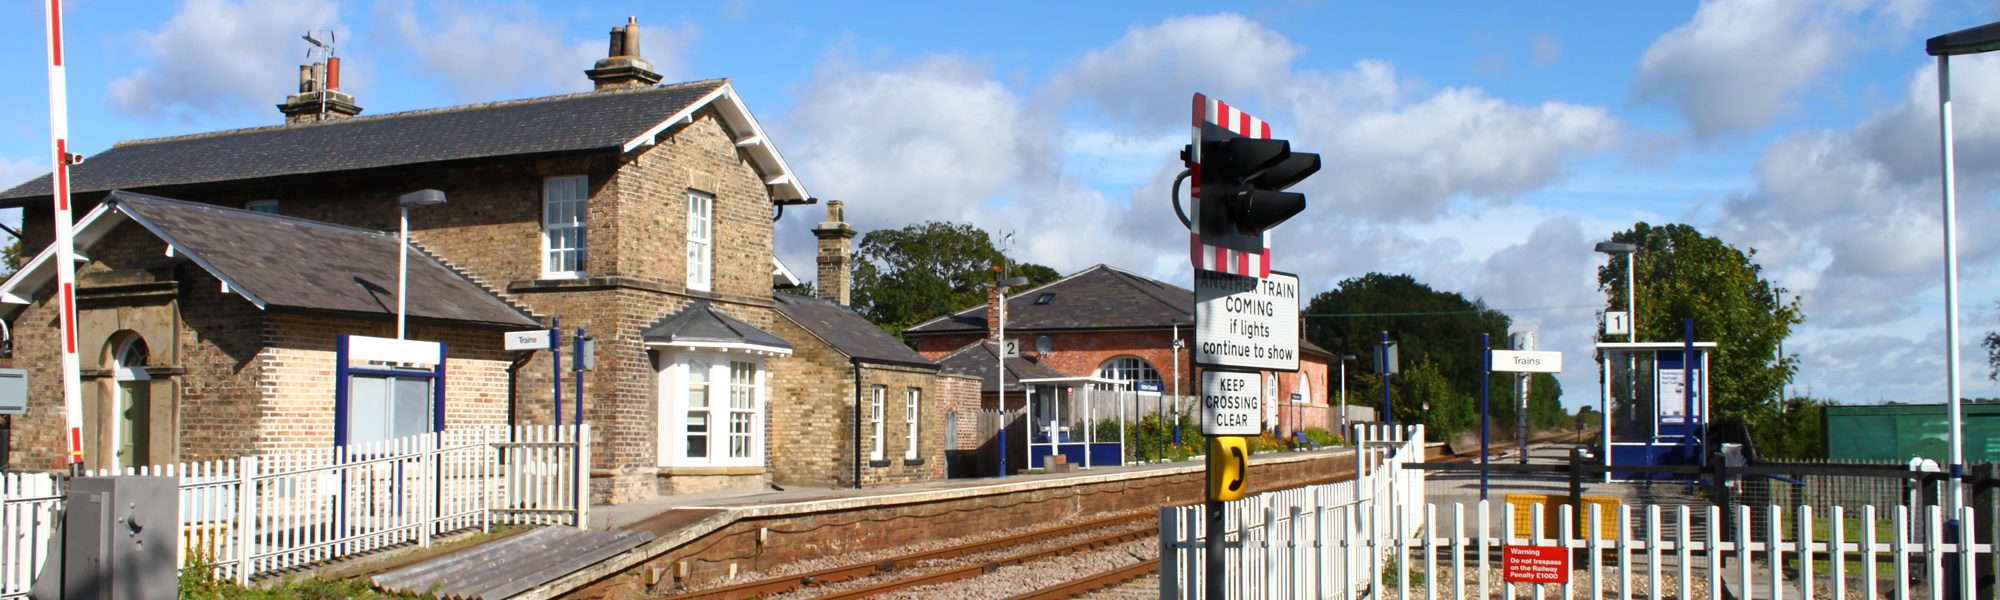 Hutton Cranswick Train Station